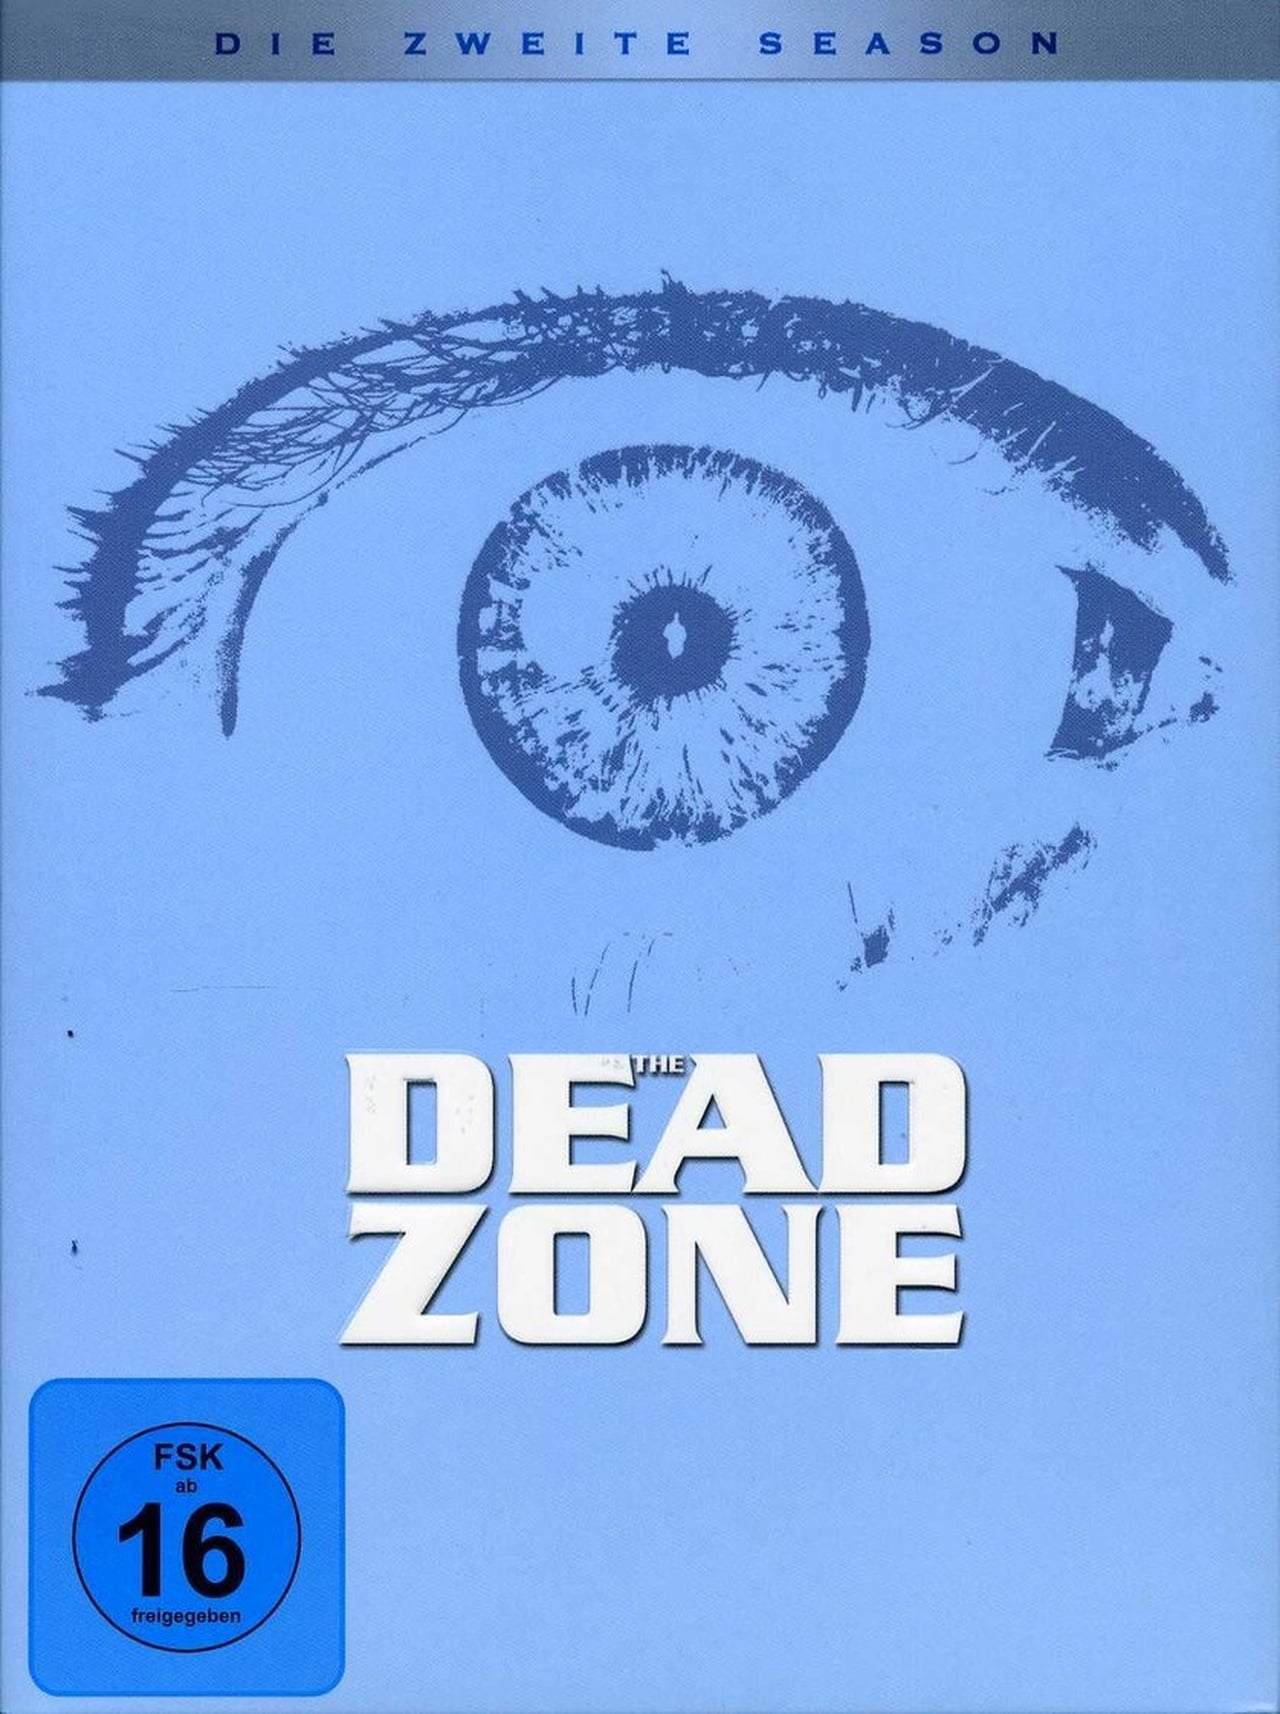 The Dead Zone (2003)